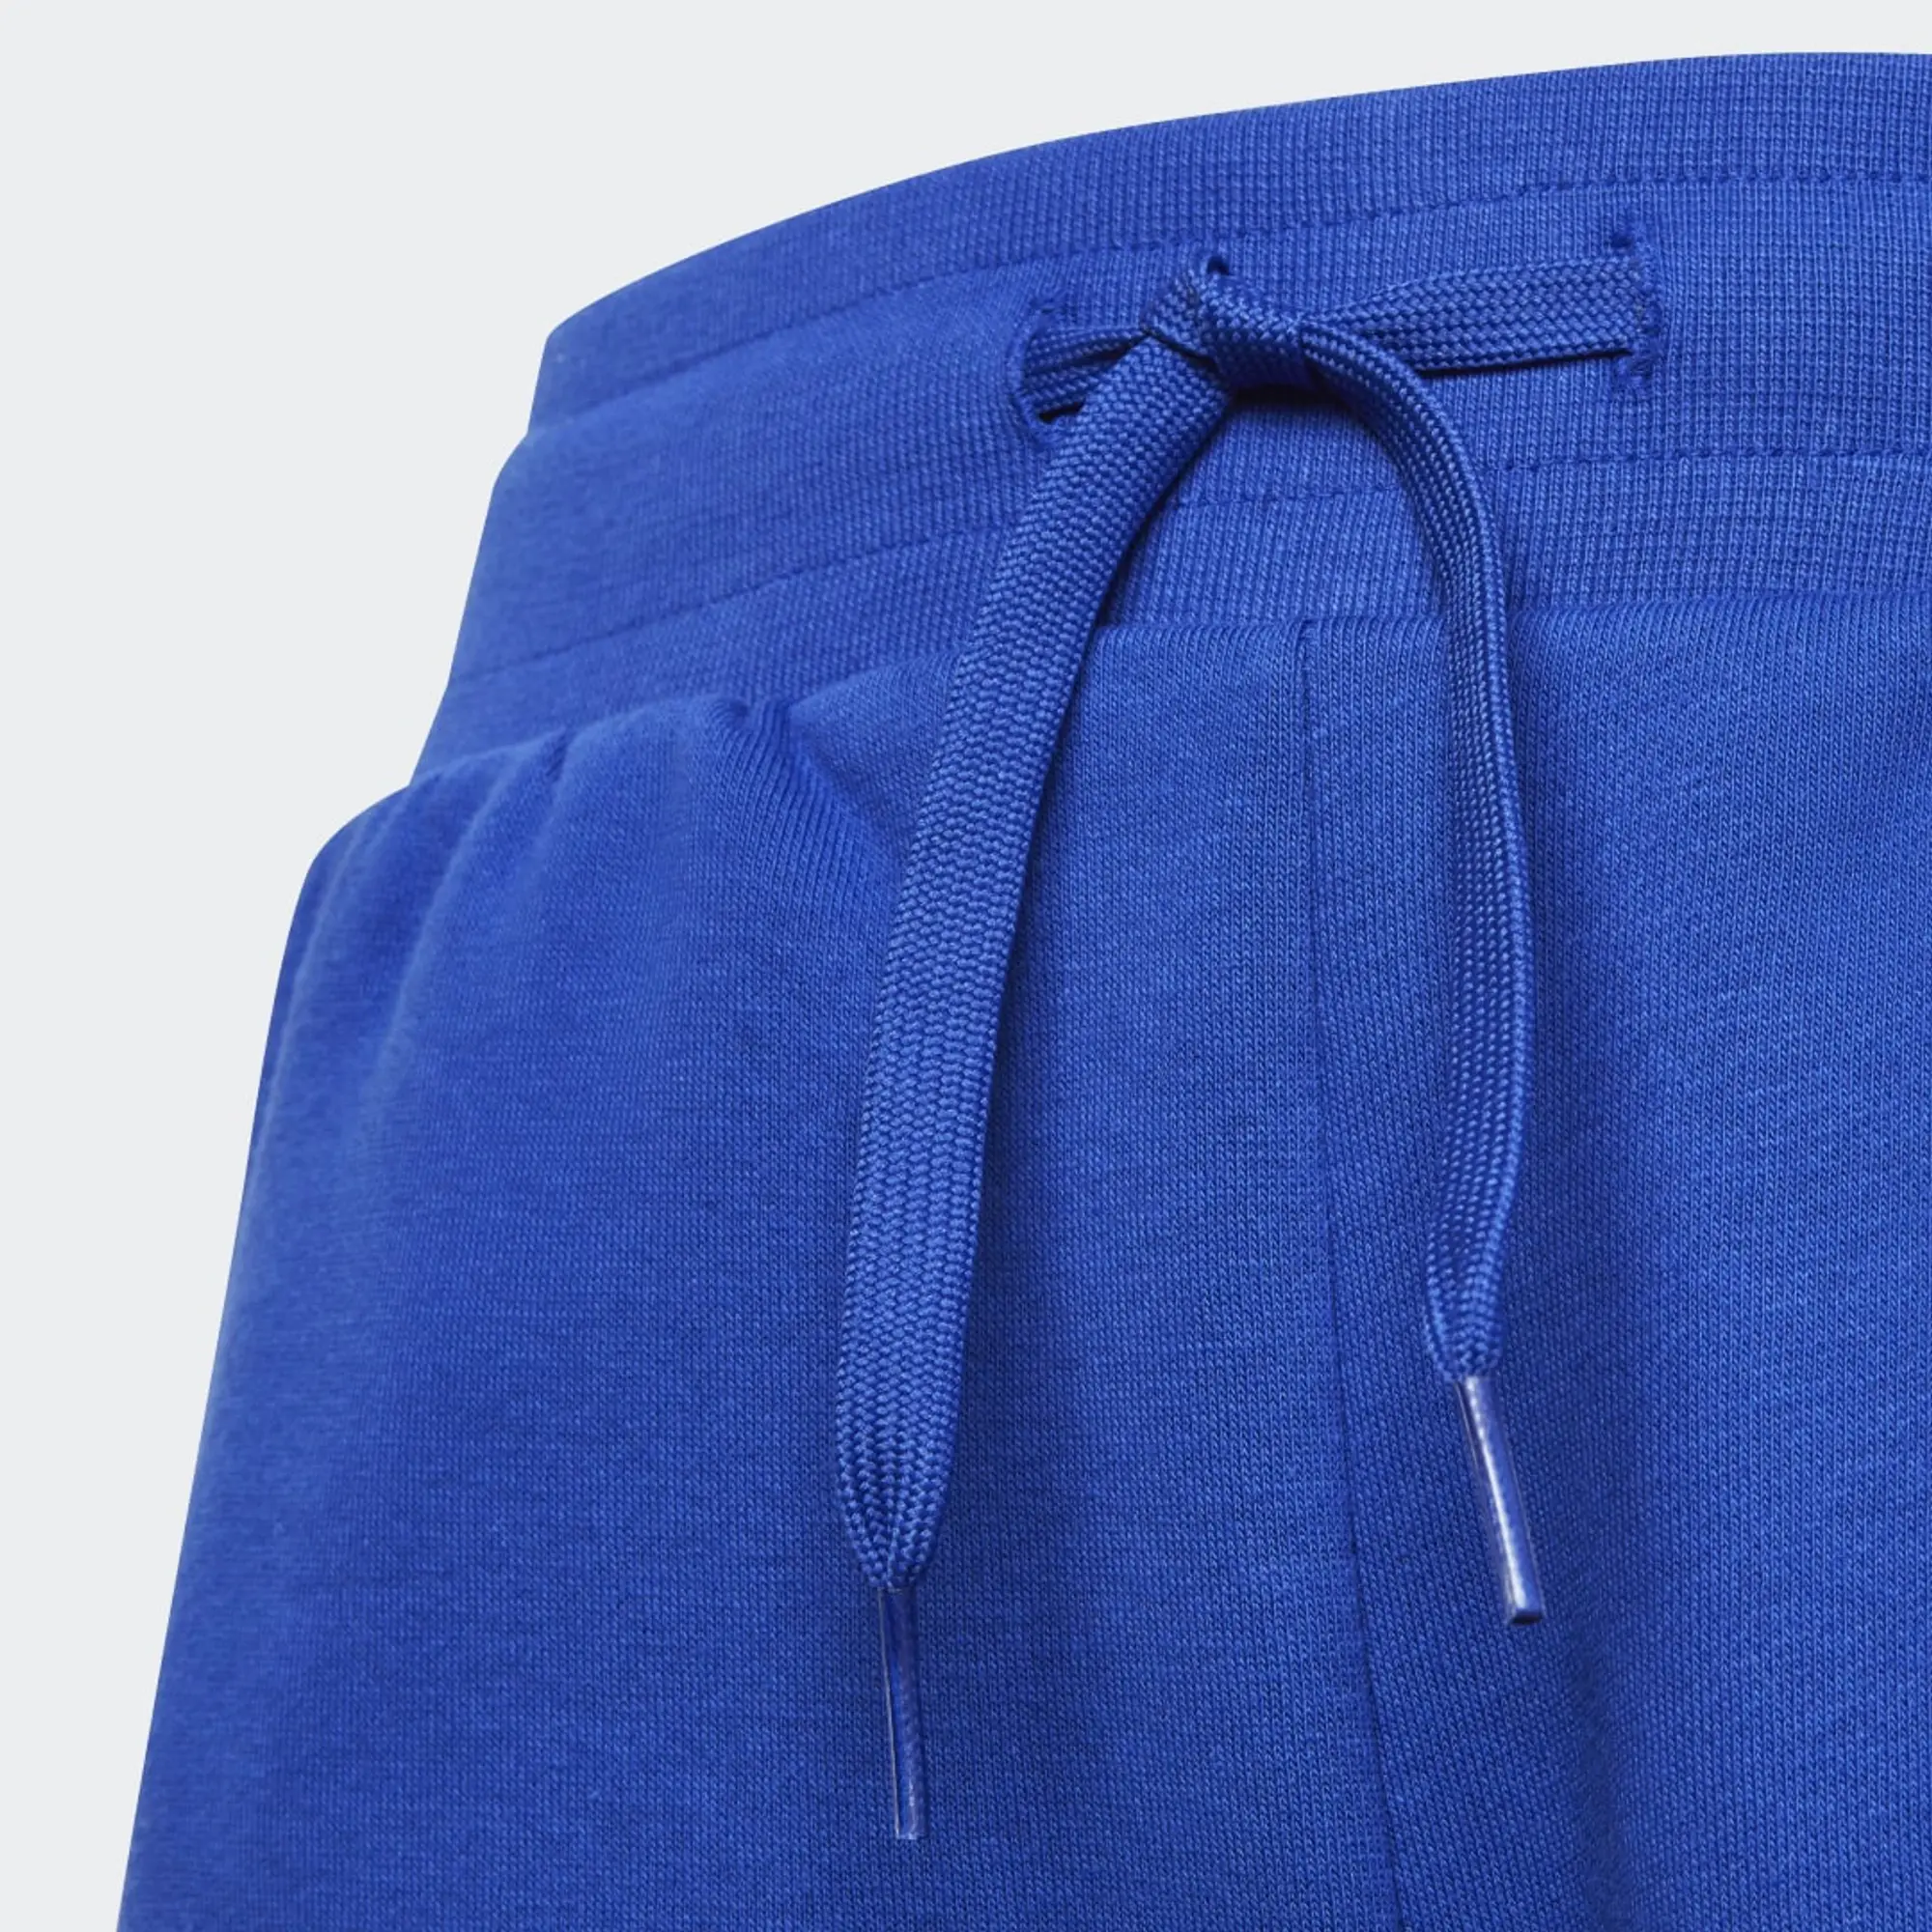 adidas Originals Childrens Unisex Adicolor Pants - Blue Cotton